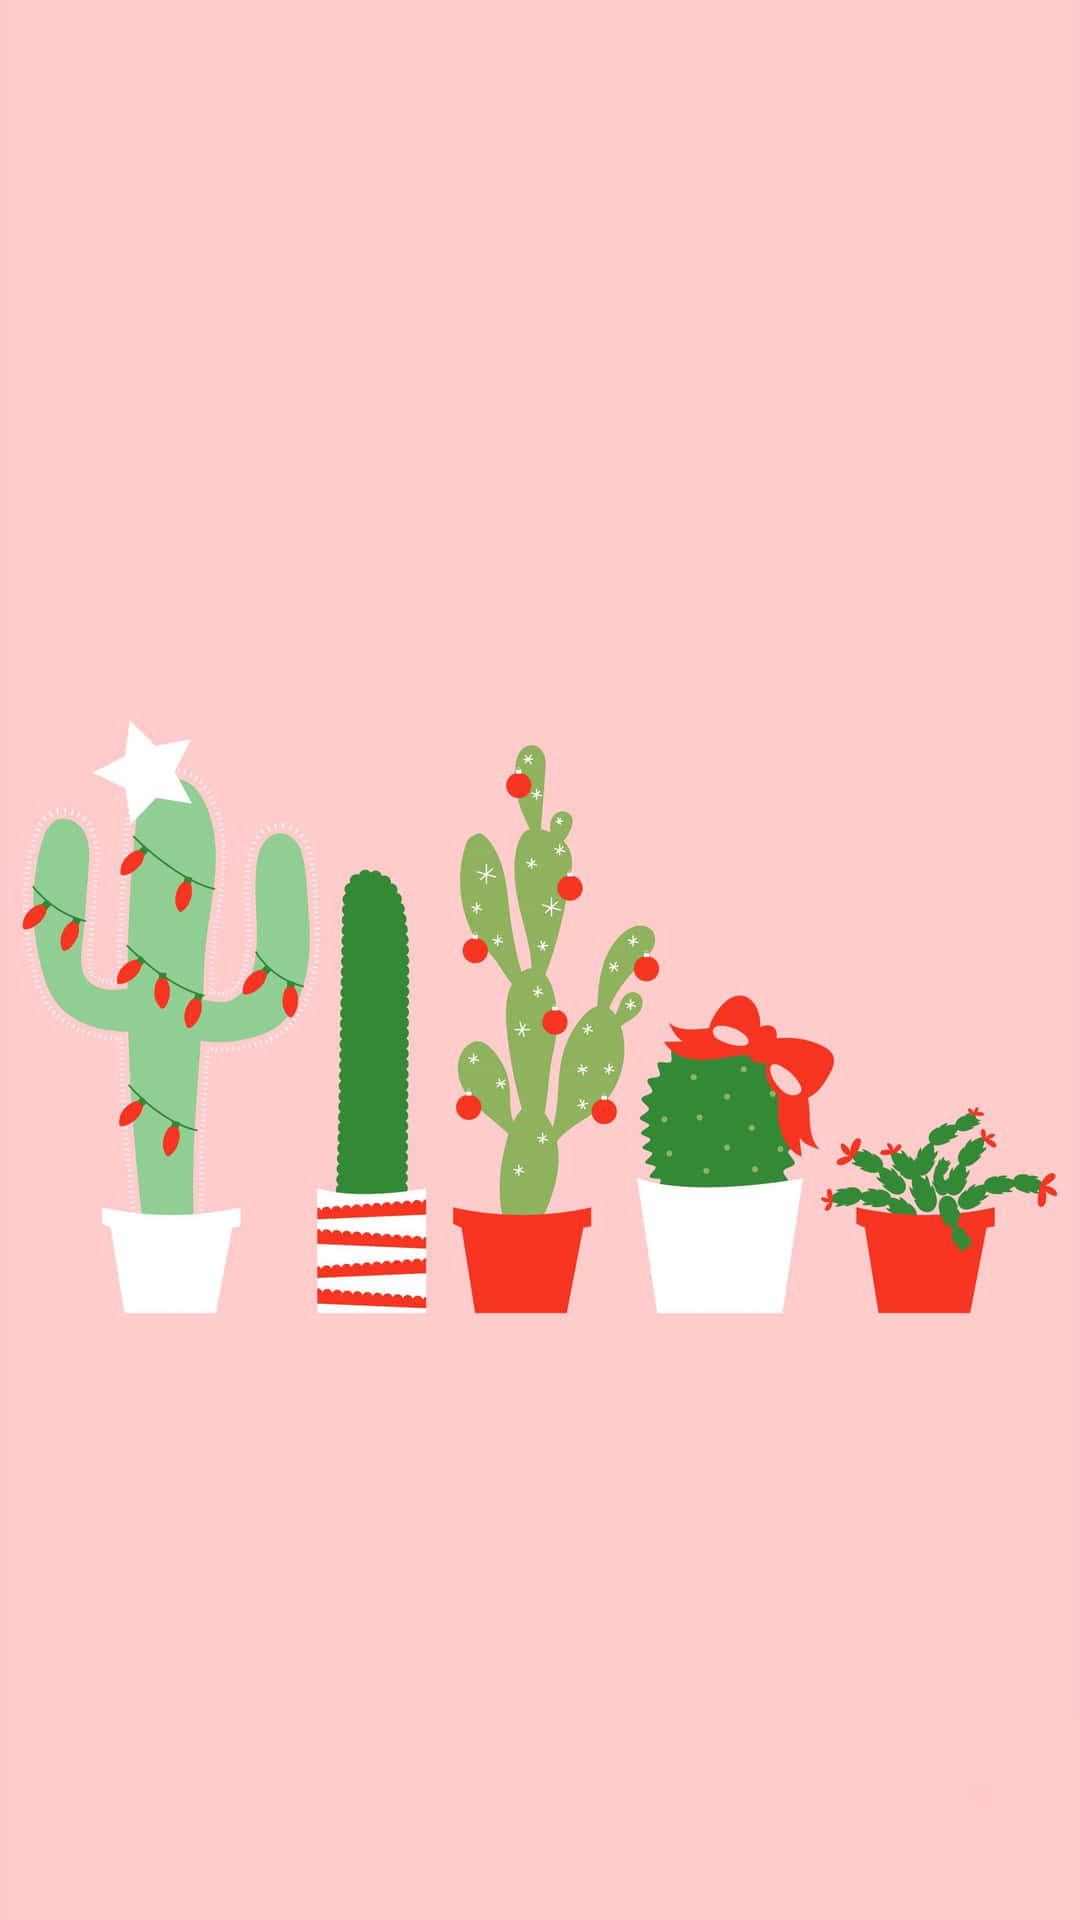 Uniphone Inspirado En Los Cactus, Perfecto Para Agregar Un Toque De Naturaleza A Tu Vida Diaria. Fondo de pantalla